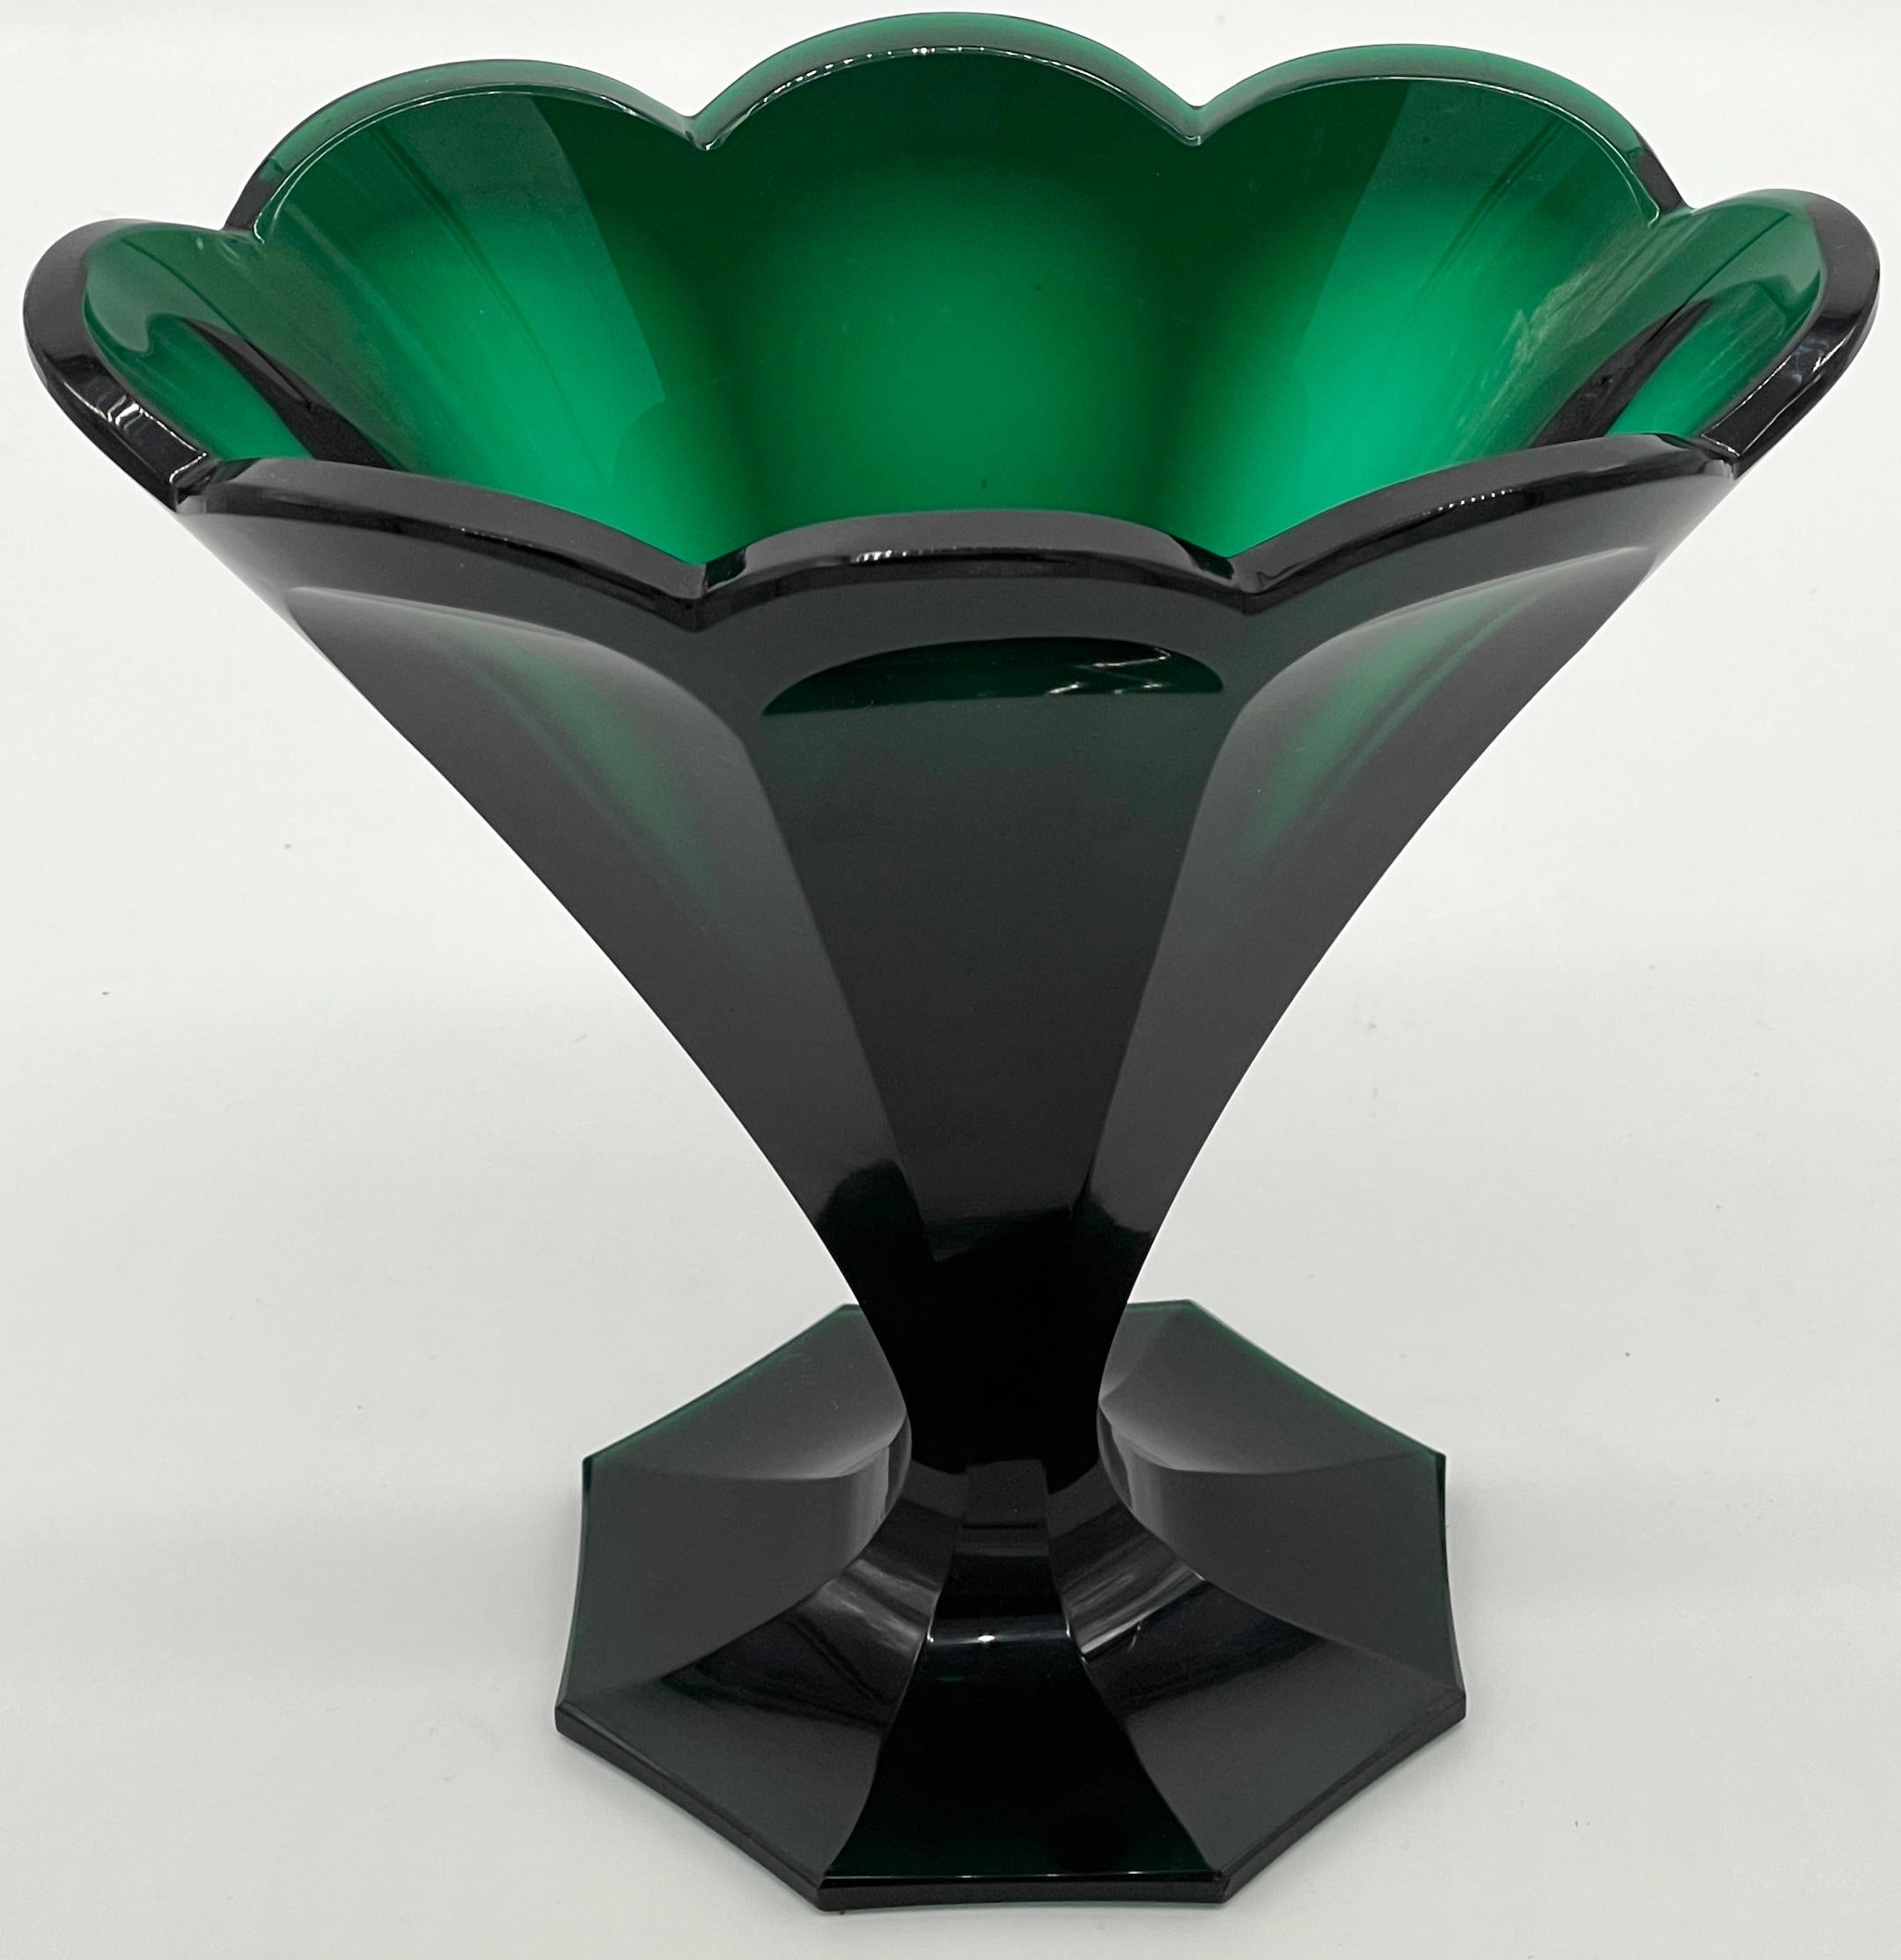 Ovale achteckige Vase aus Biedermeier-Kristall mit Smaragdschliff aus dem 19. 
Europäisch, Österreich oder Bohemia, CIRCA 1860s

Diese ovale, achteckige Vase ist ein beeindruckendes Beispiel für Biedermeierglas aus dem 19. Jahrhundert und zeigt die